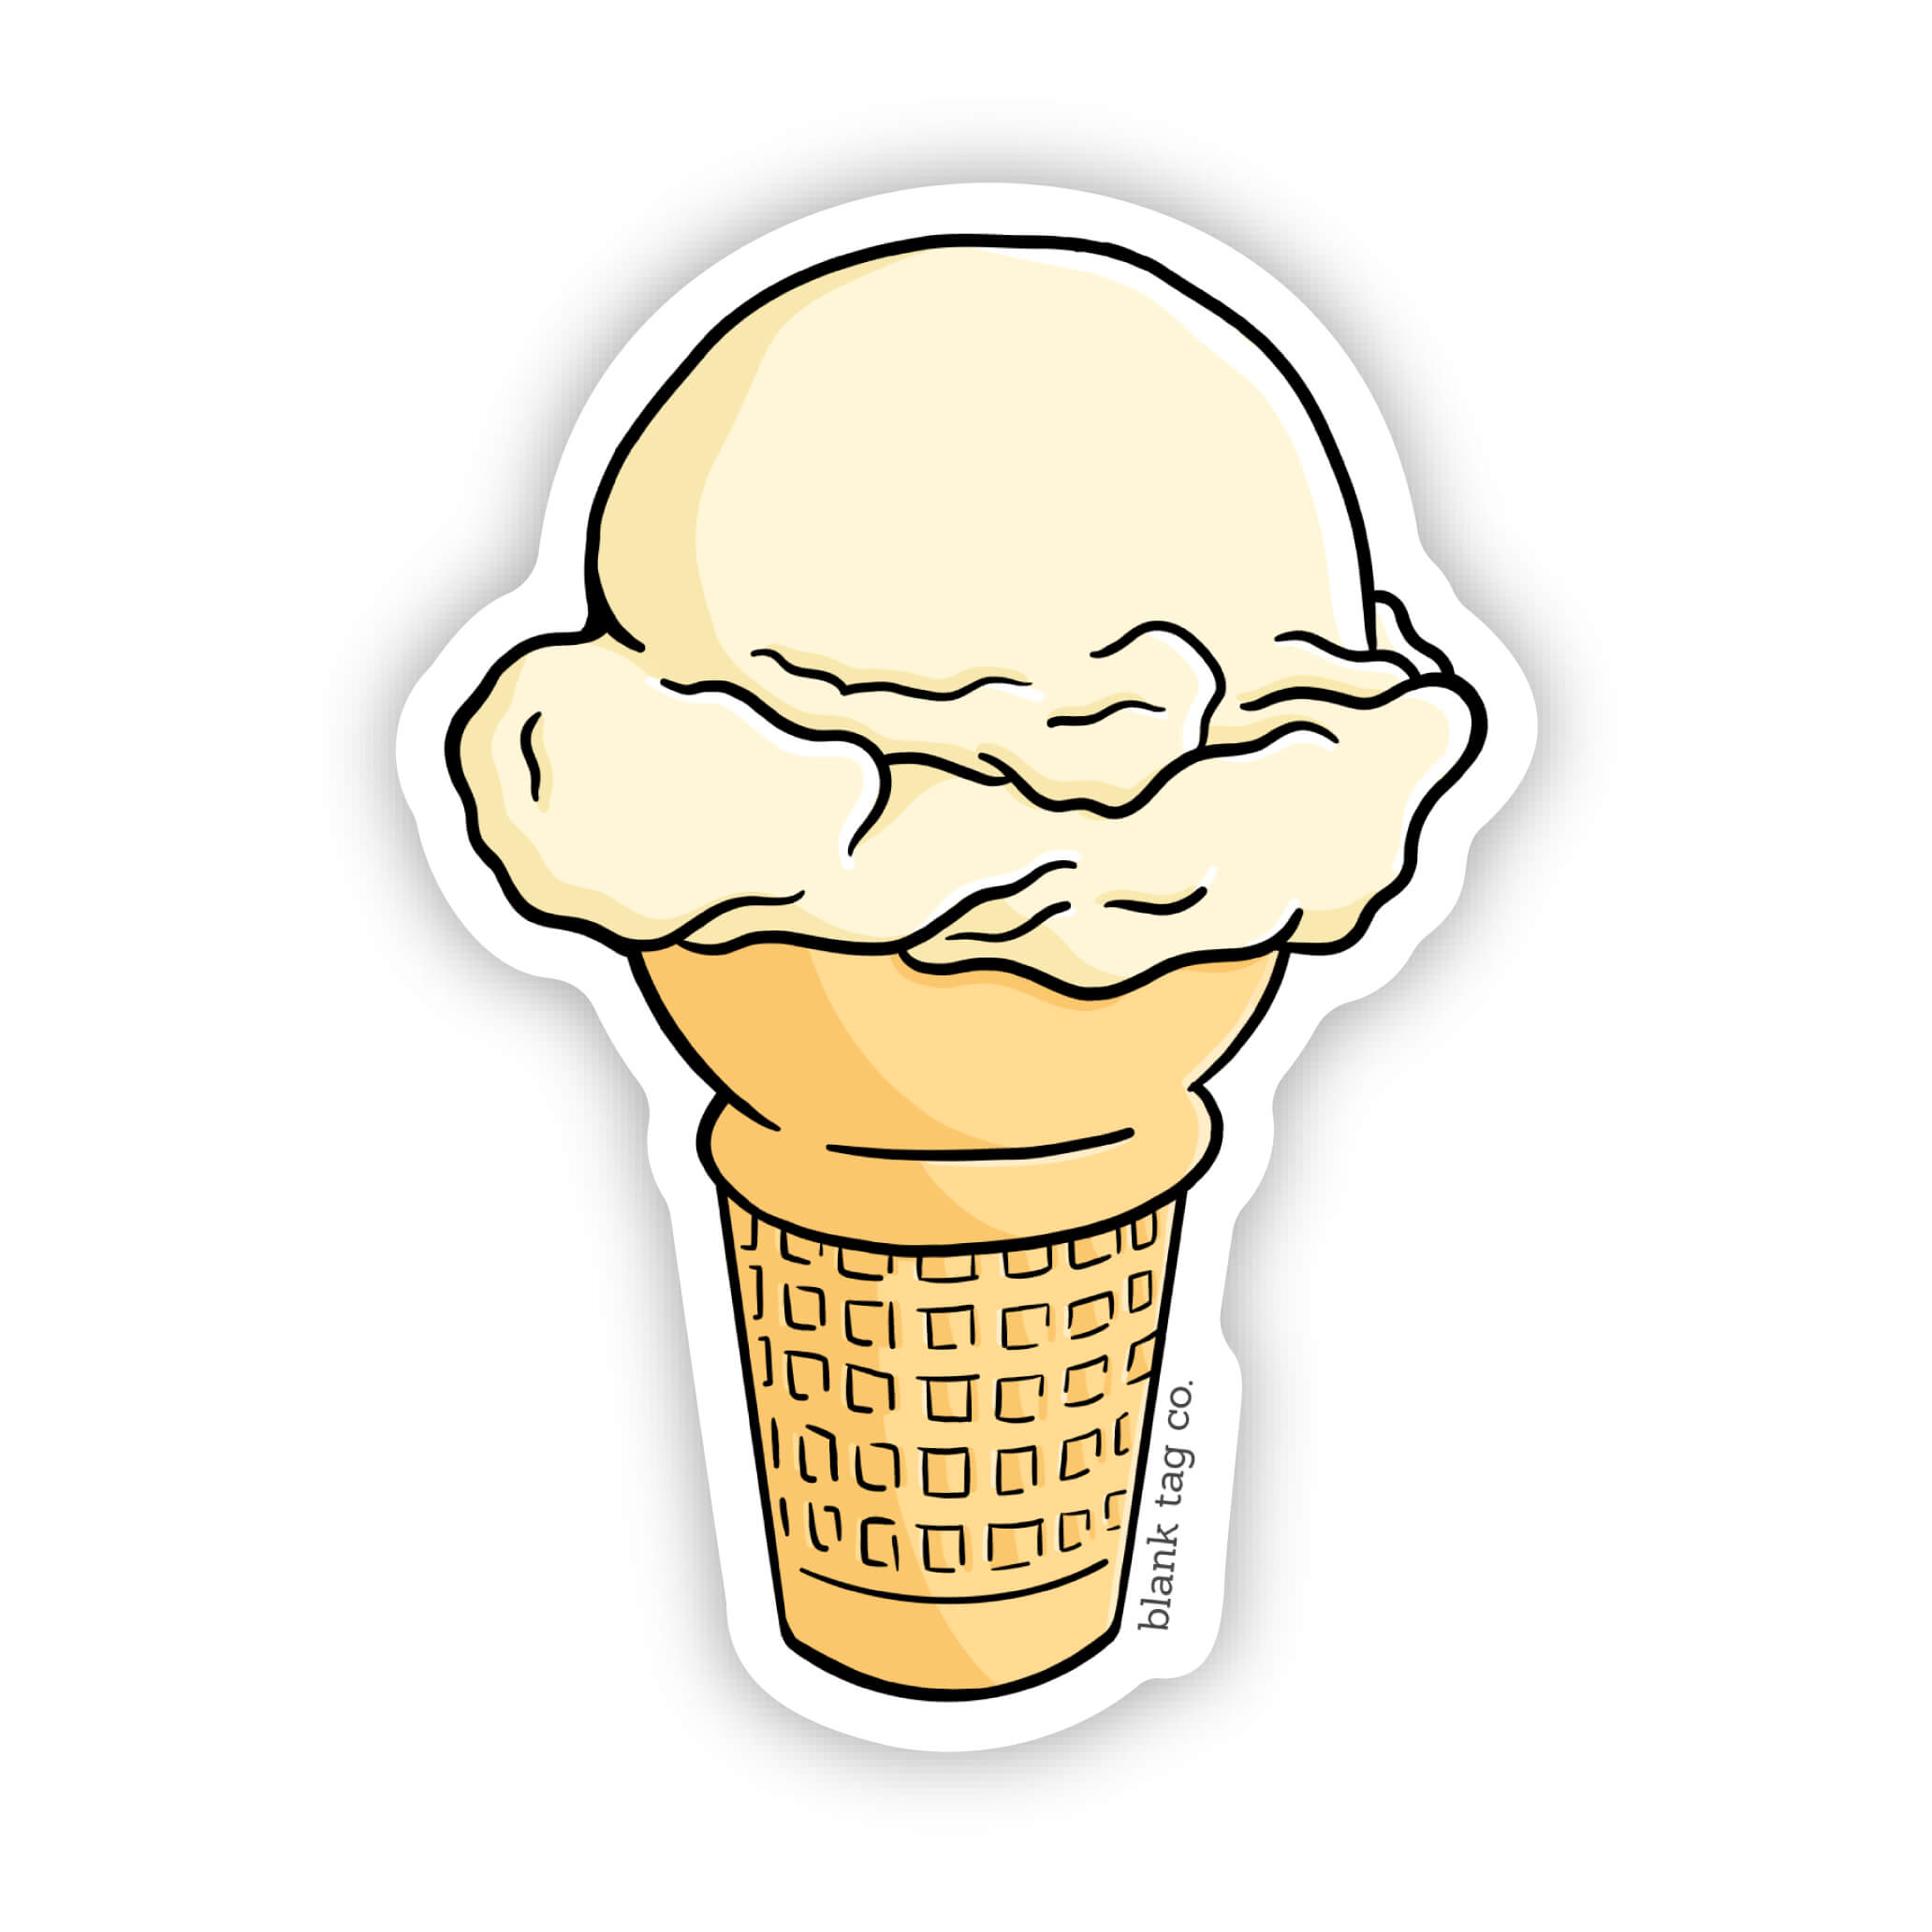 The Scoop of Ice Cream Sticker